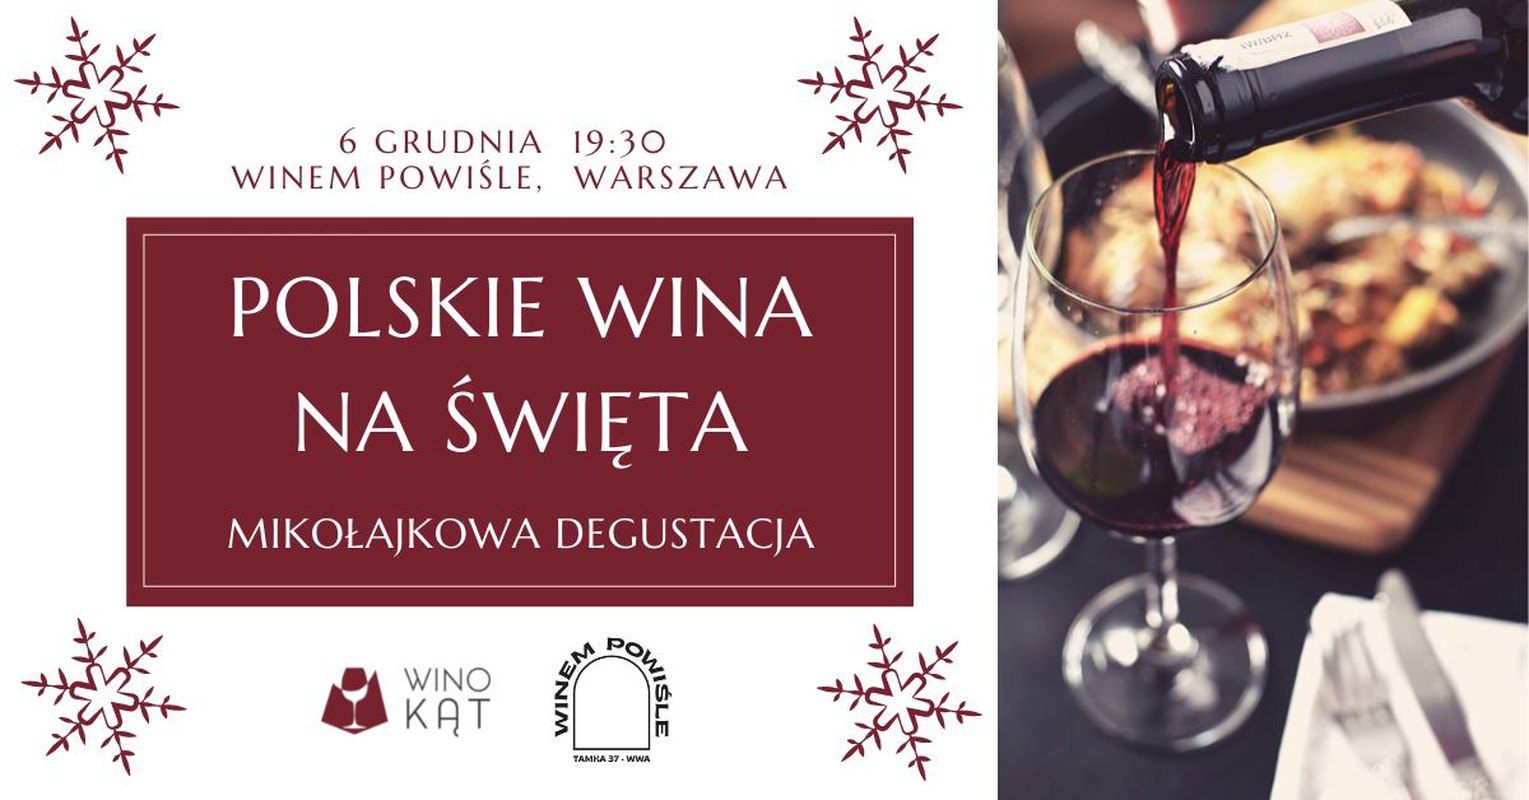 Polskie wina na Święta - degustacja Mikołajkowa